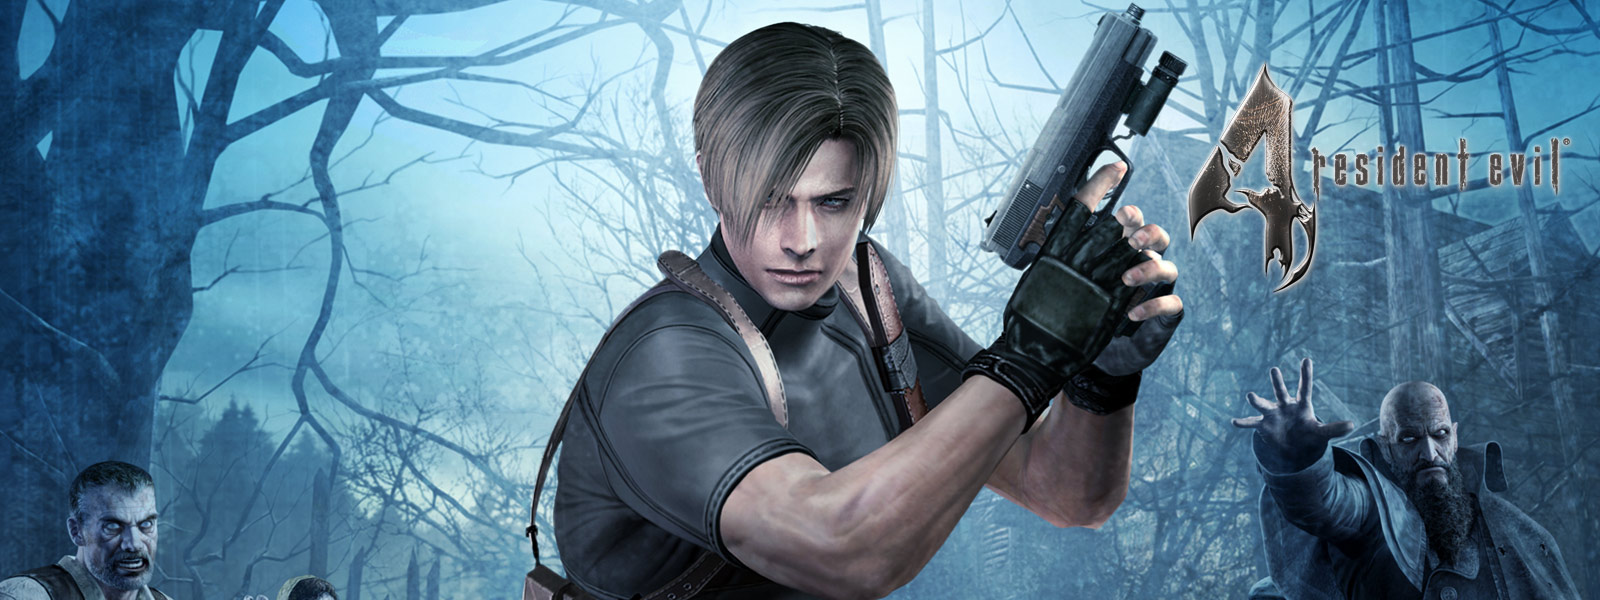 Resident Evil 4, personaje que sostiene una pistola en un bosque oscuro rodeado de zombis